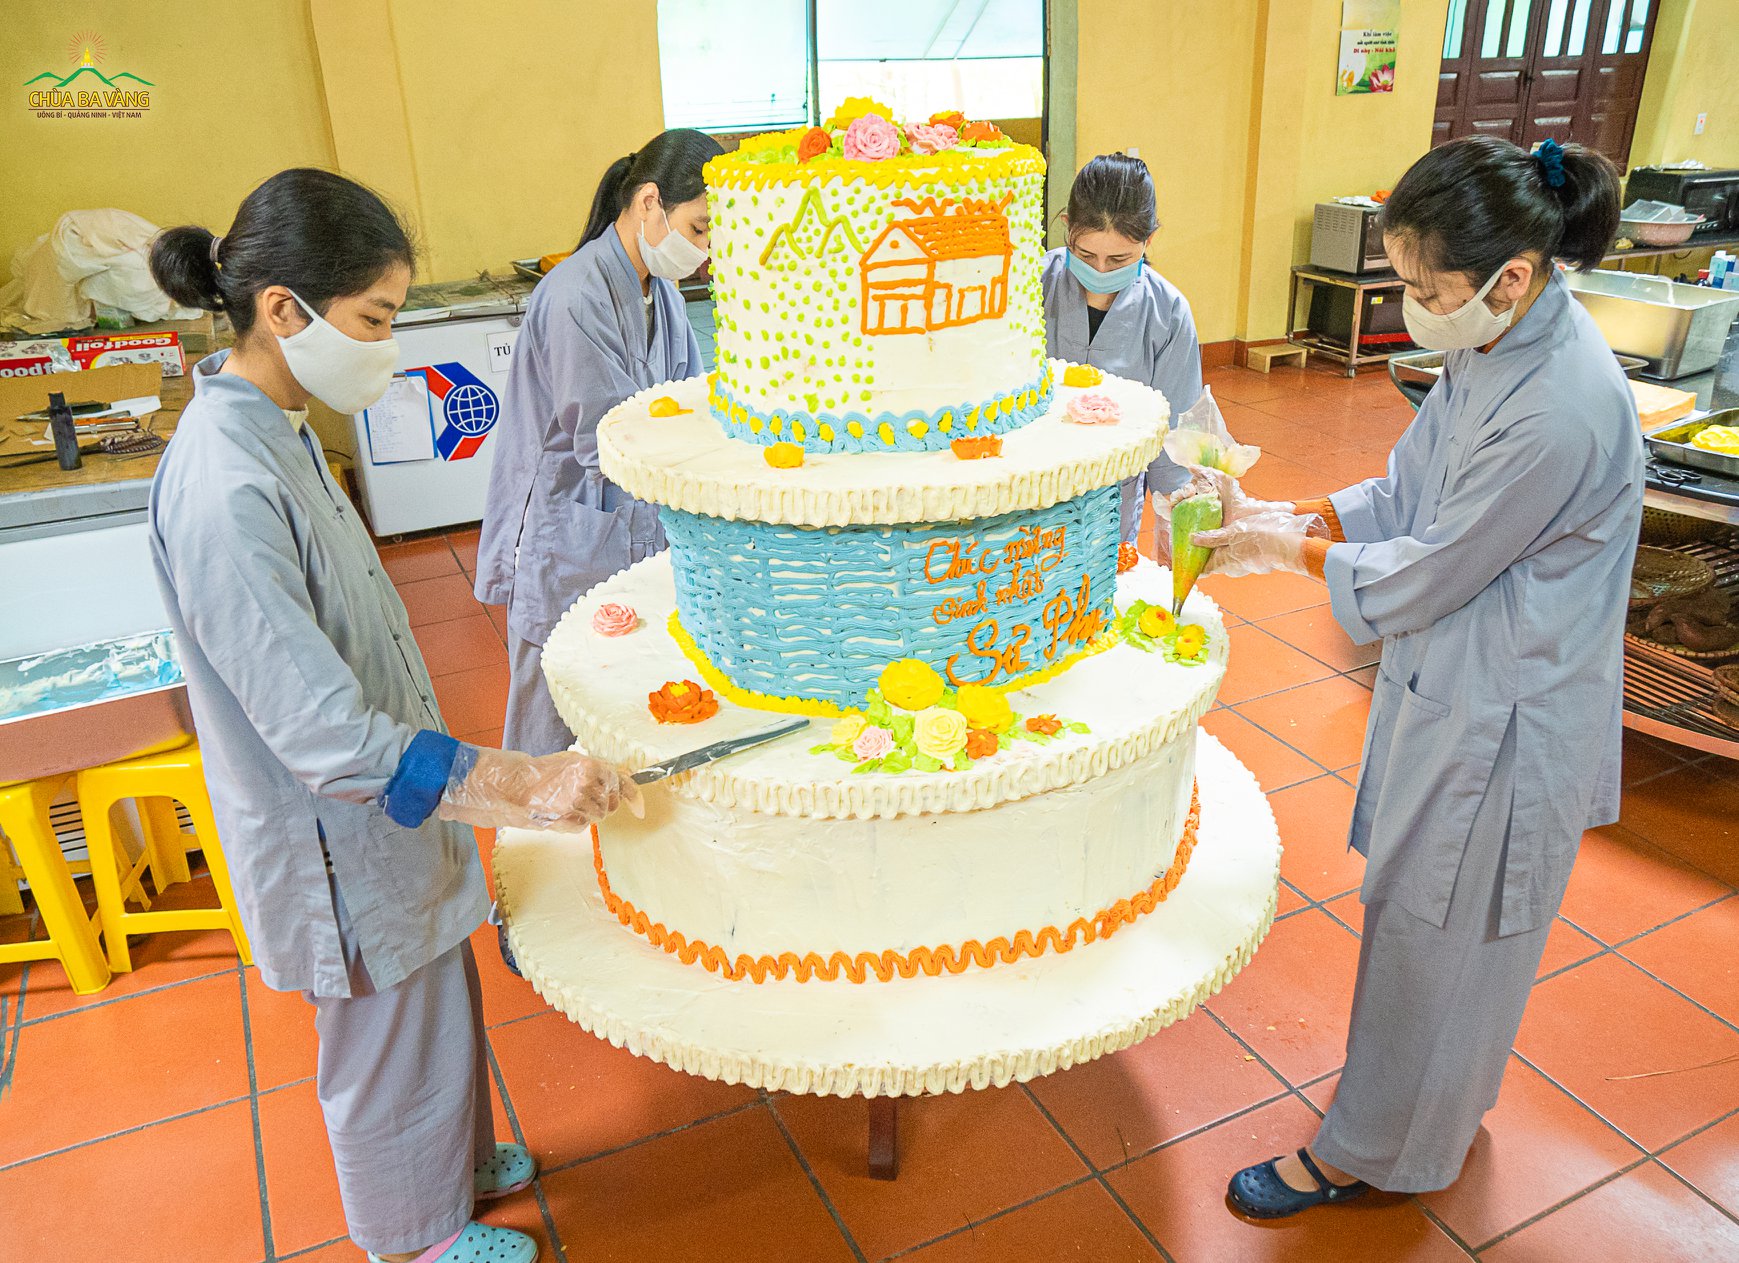 Các Phật tử đang hoàn thiện những công đoạn trang trí cuối cùng cho chiếc bánh sinh nhật
